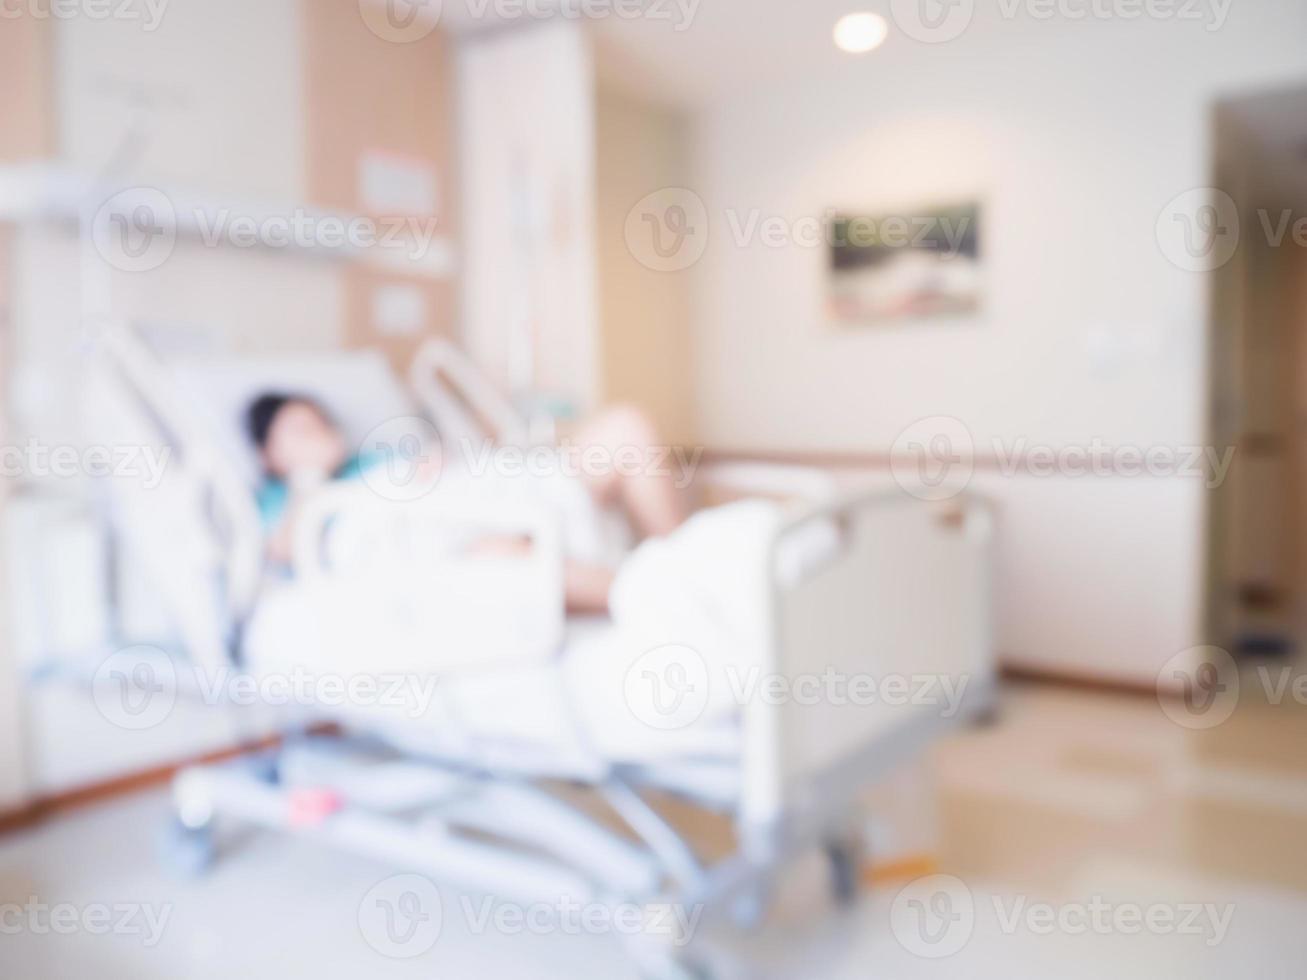 Abstrakter Unschärfepatient auf Bett im Krankenzimmerinnenraum für Hintergrund foto